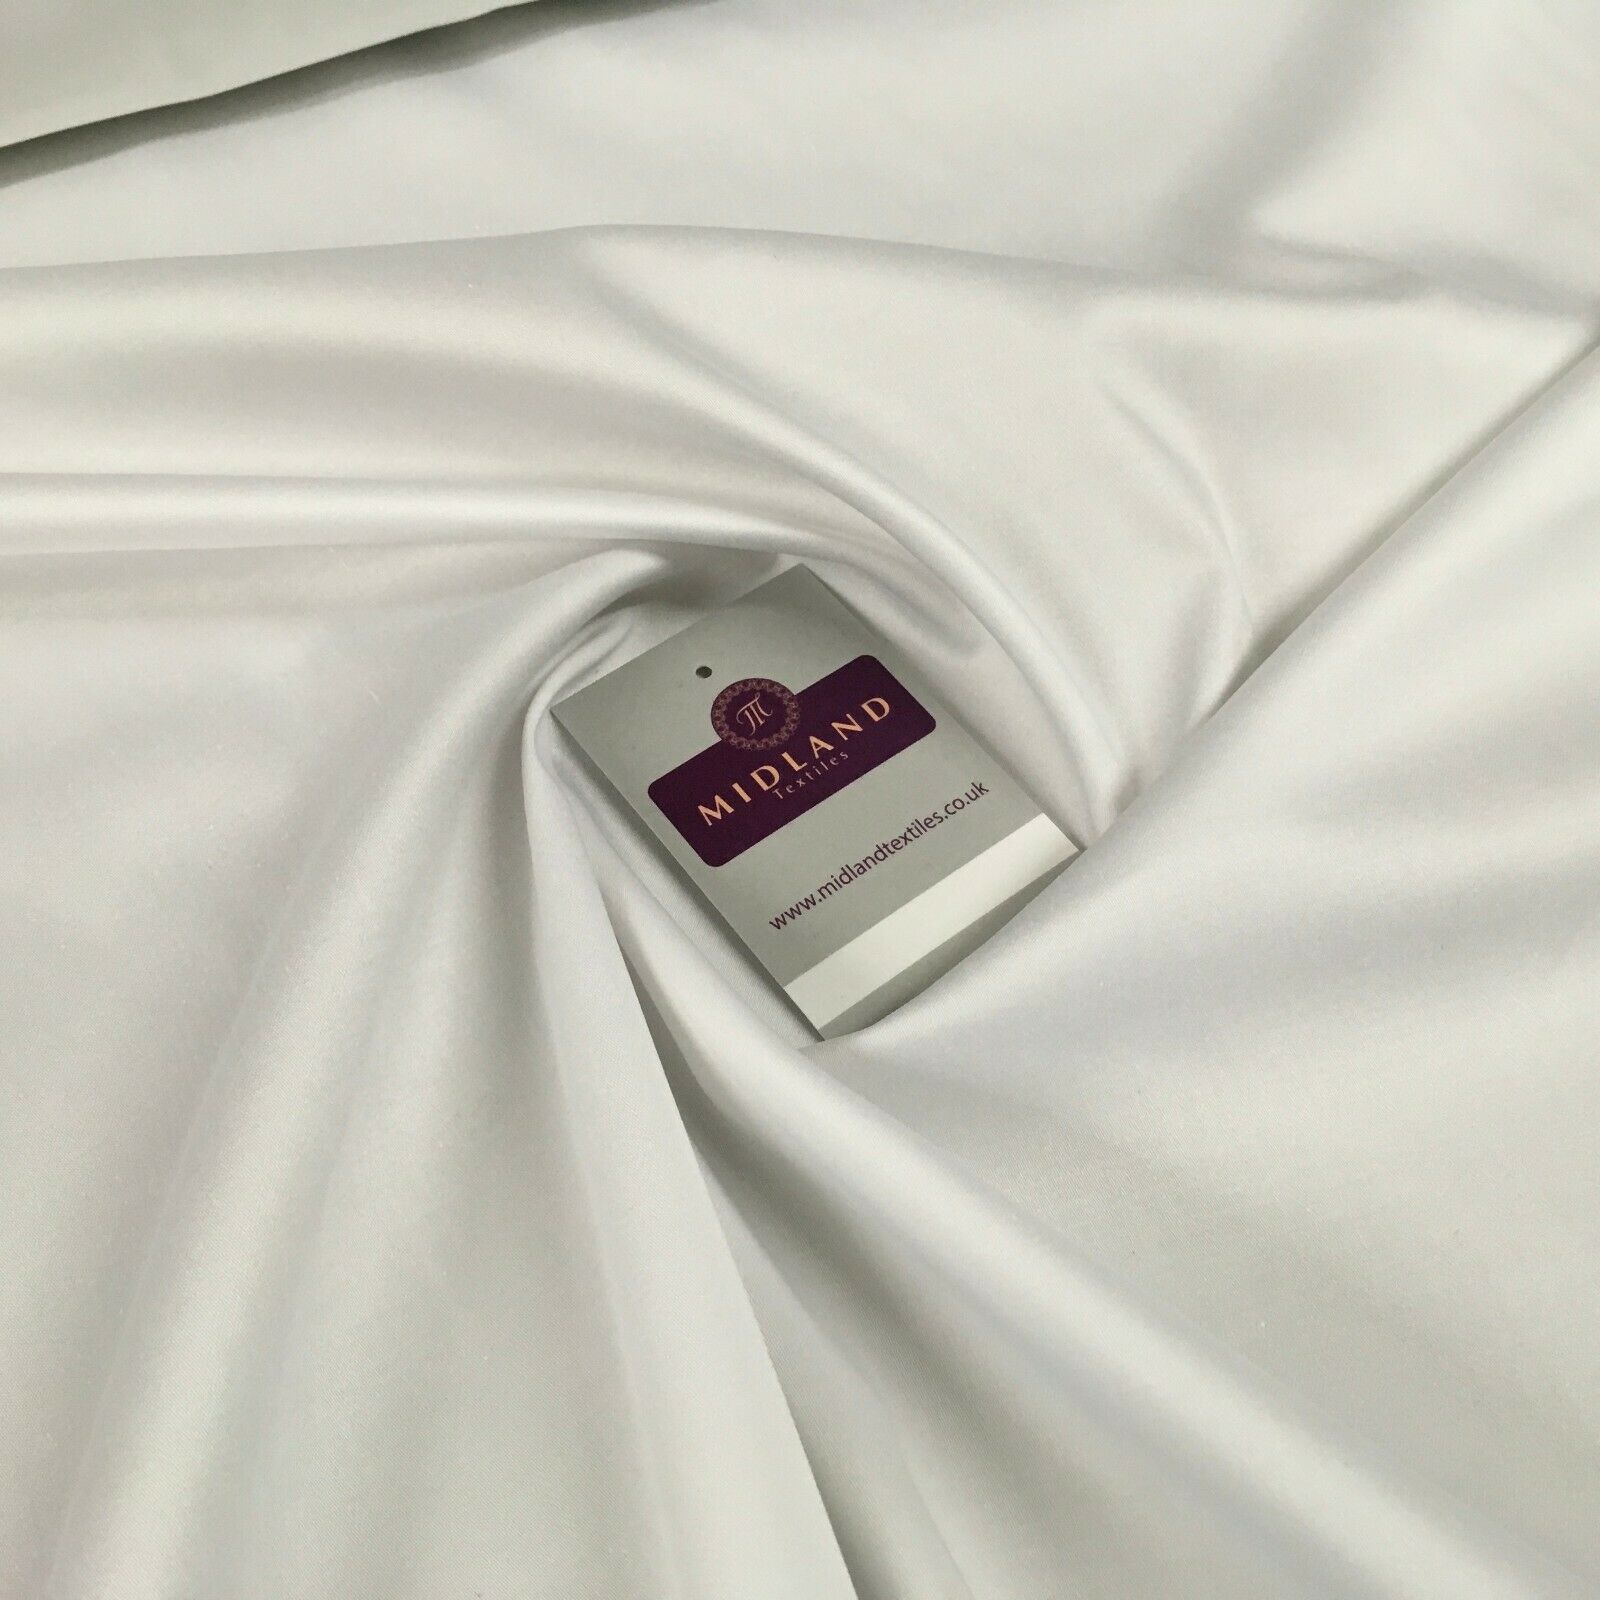 Cotton Matt Sateen Sheeting bedding fabric 147 cm Wide MH1127 Mtex